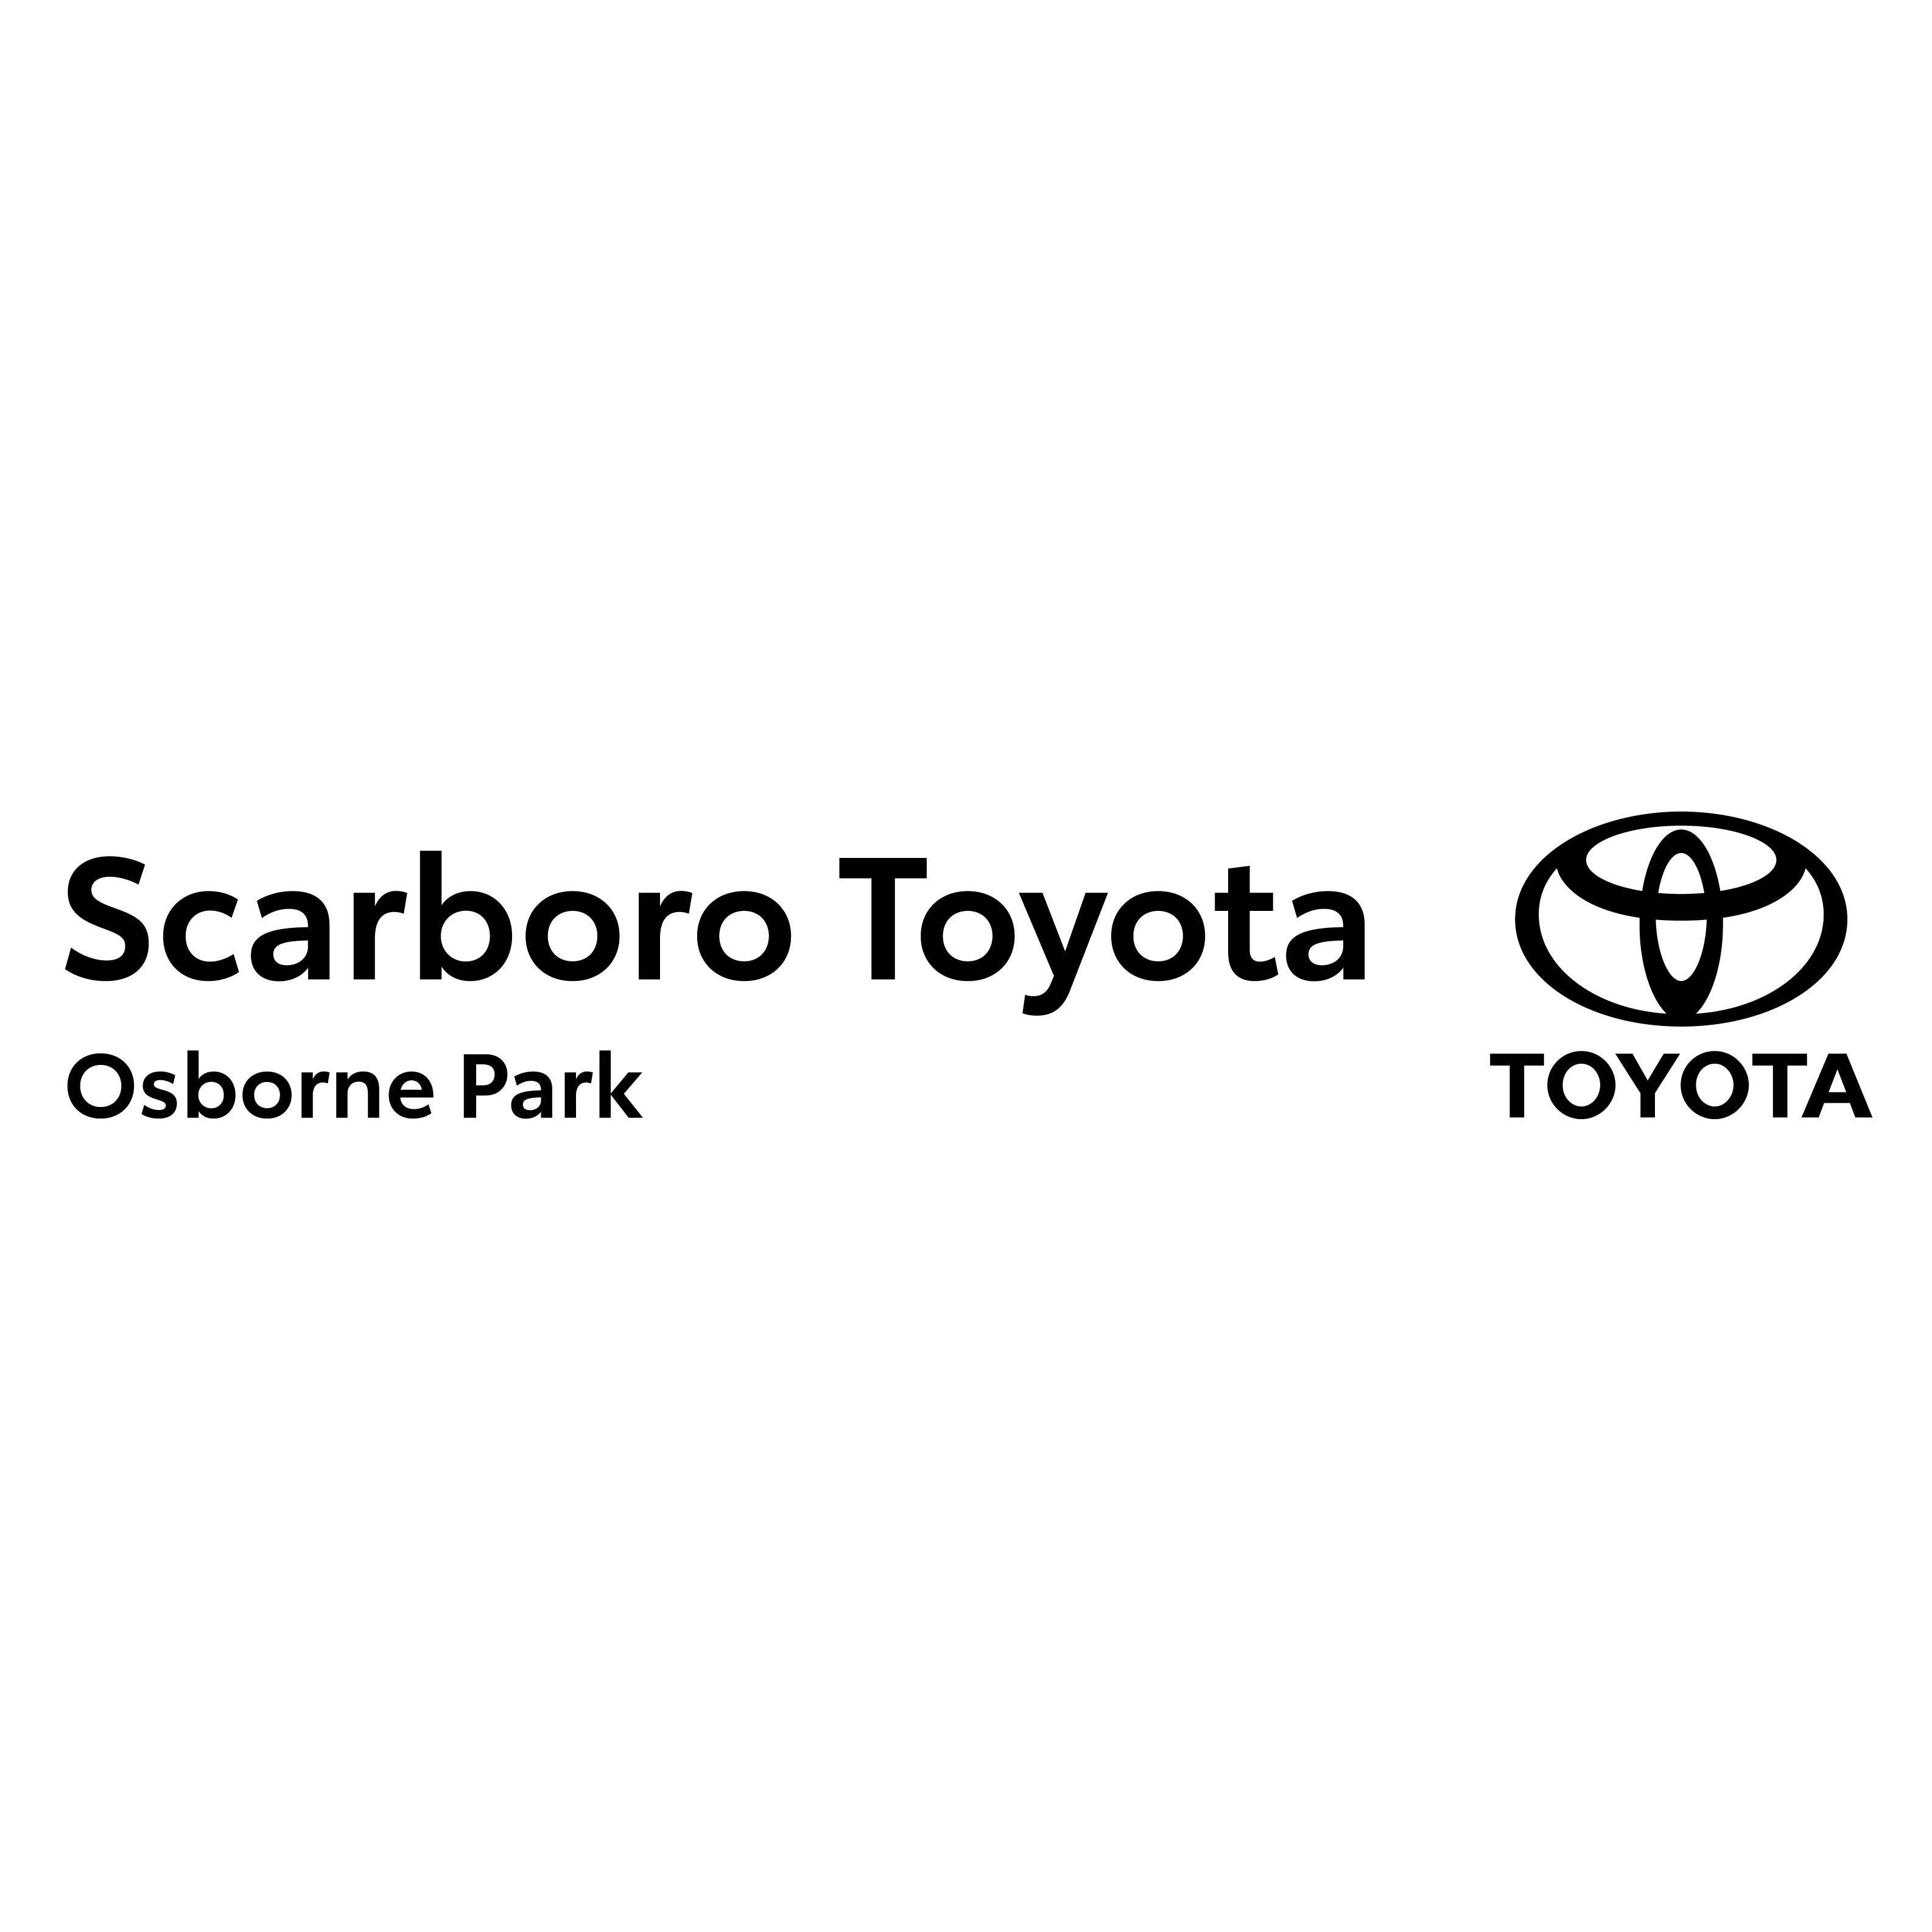 Scarboro Toyota - Osborne Park, WA 6017 - (08) 9273 1000 | ShowMeLocal.com